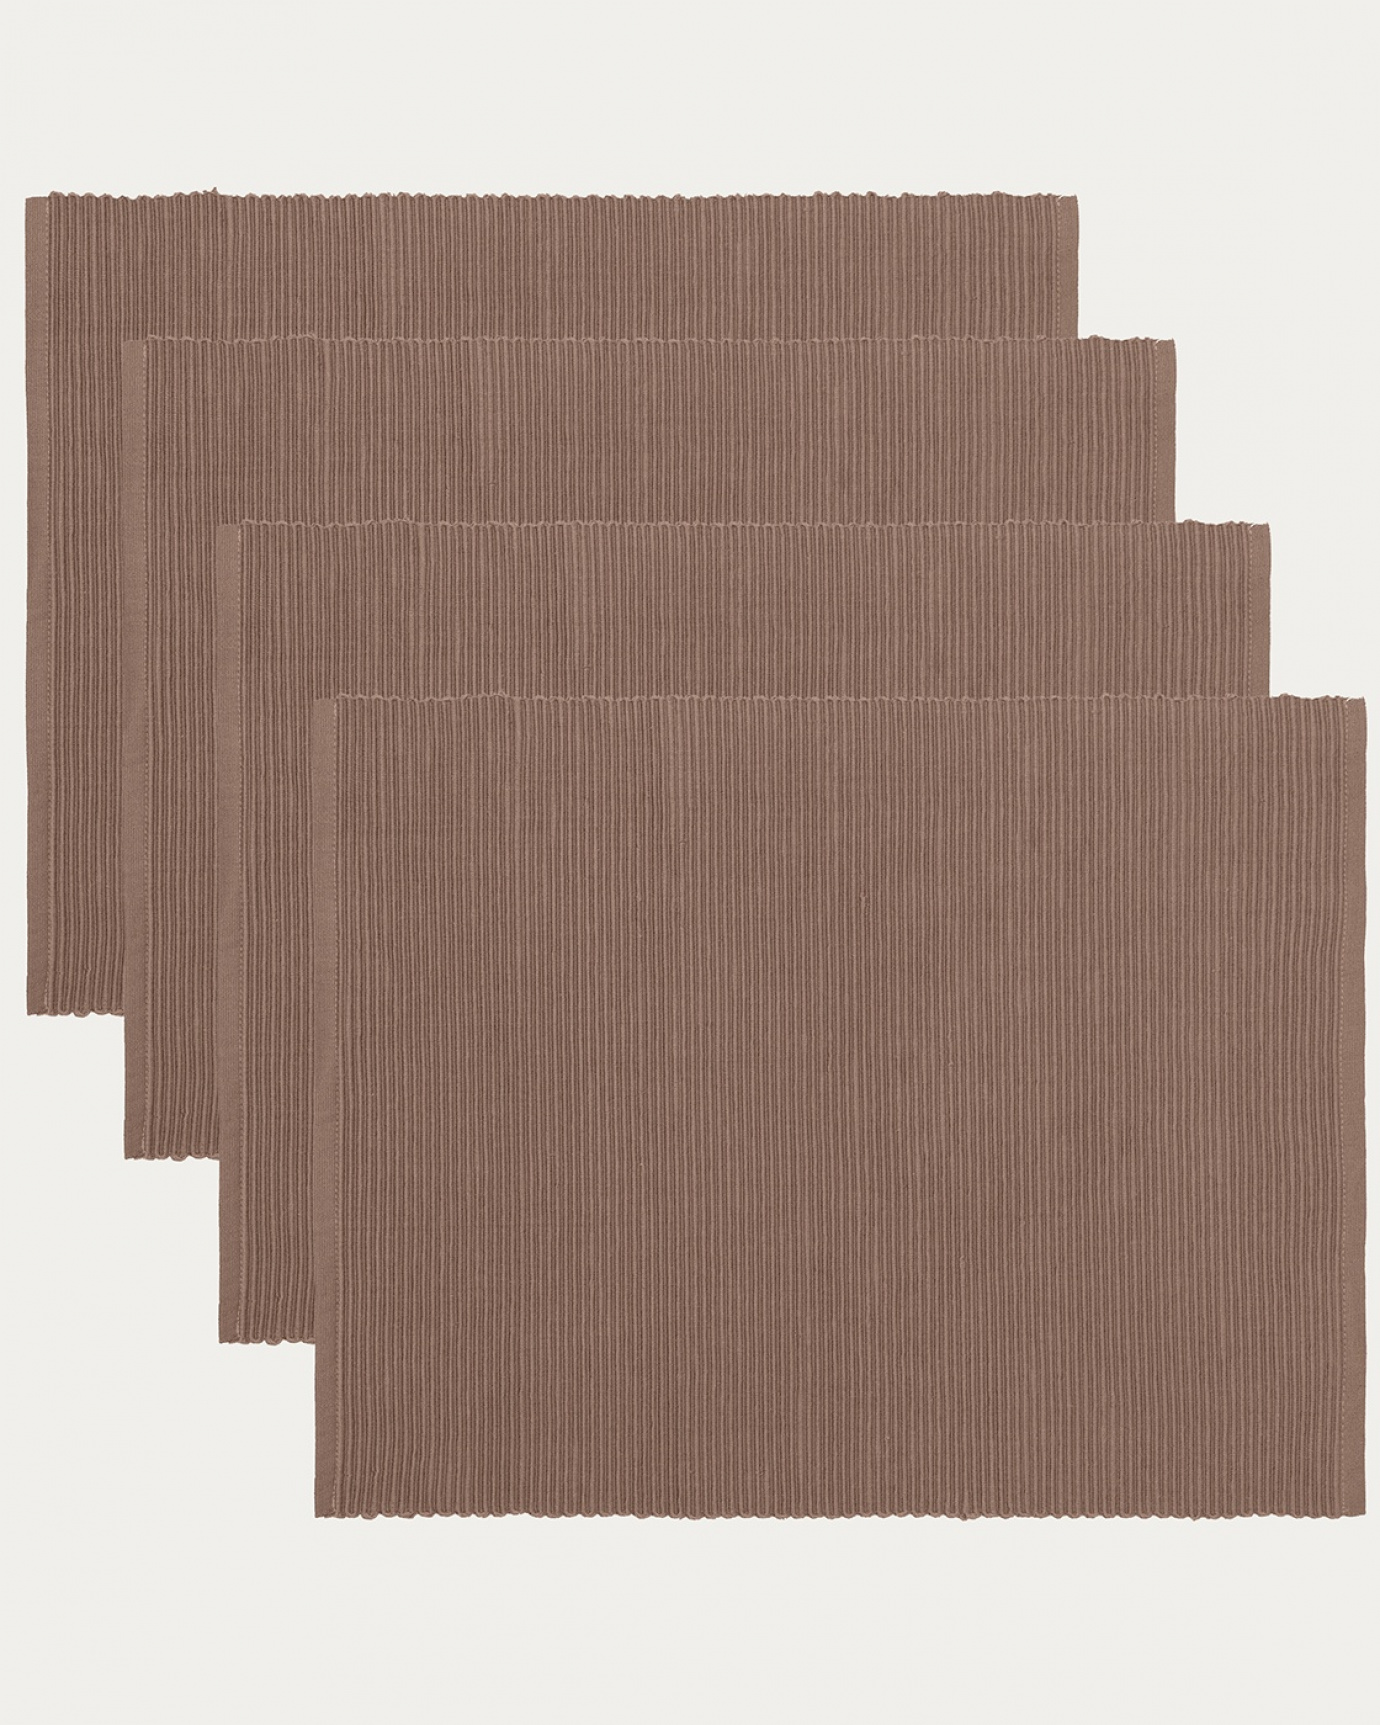 Produktbild dunkles taupe UNI Tischset aus weicher Baumwolle in Rippenqualität von LINUM DESIGN. Größe 35x46 cm und in 4er-Pack verkauft.